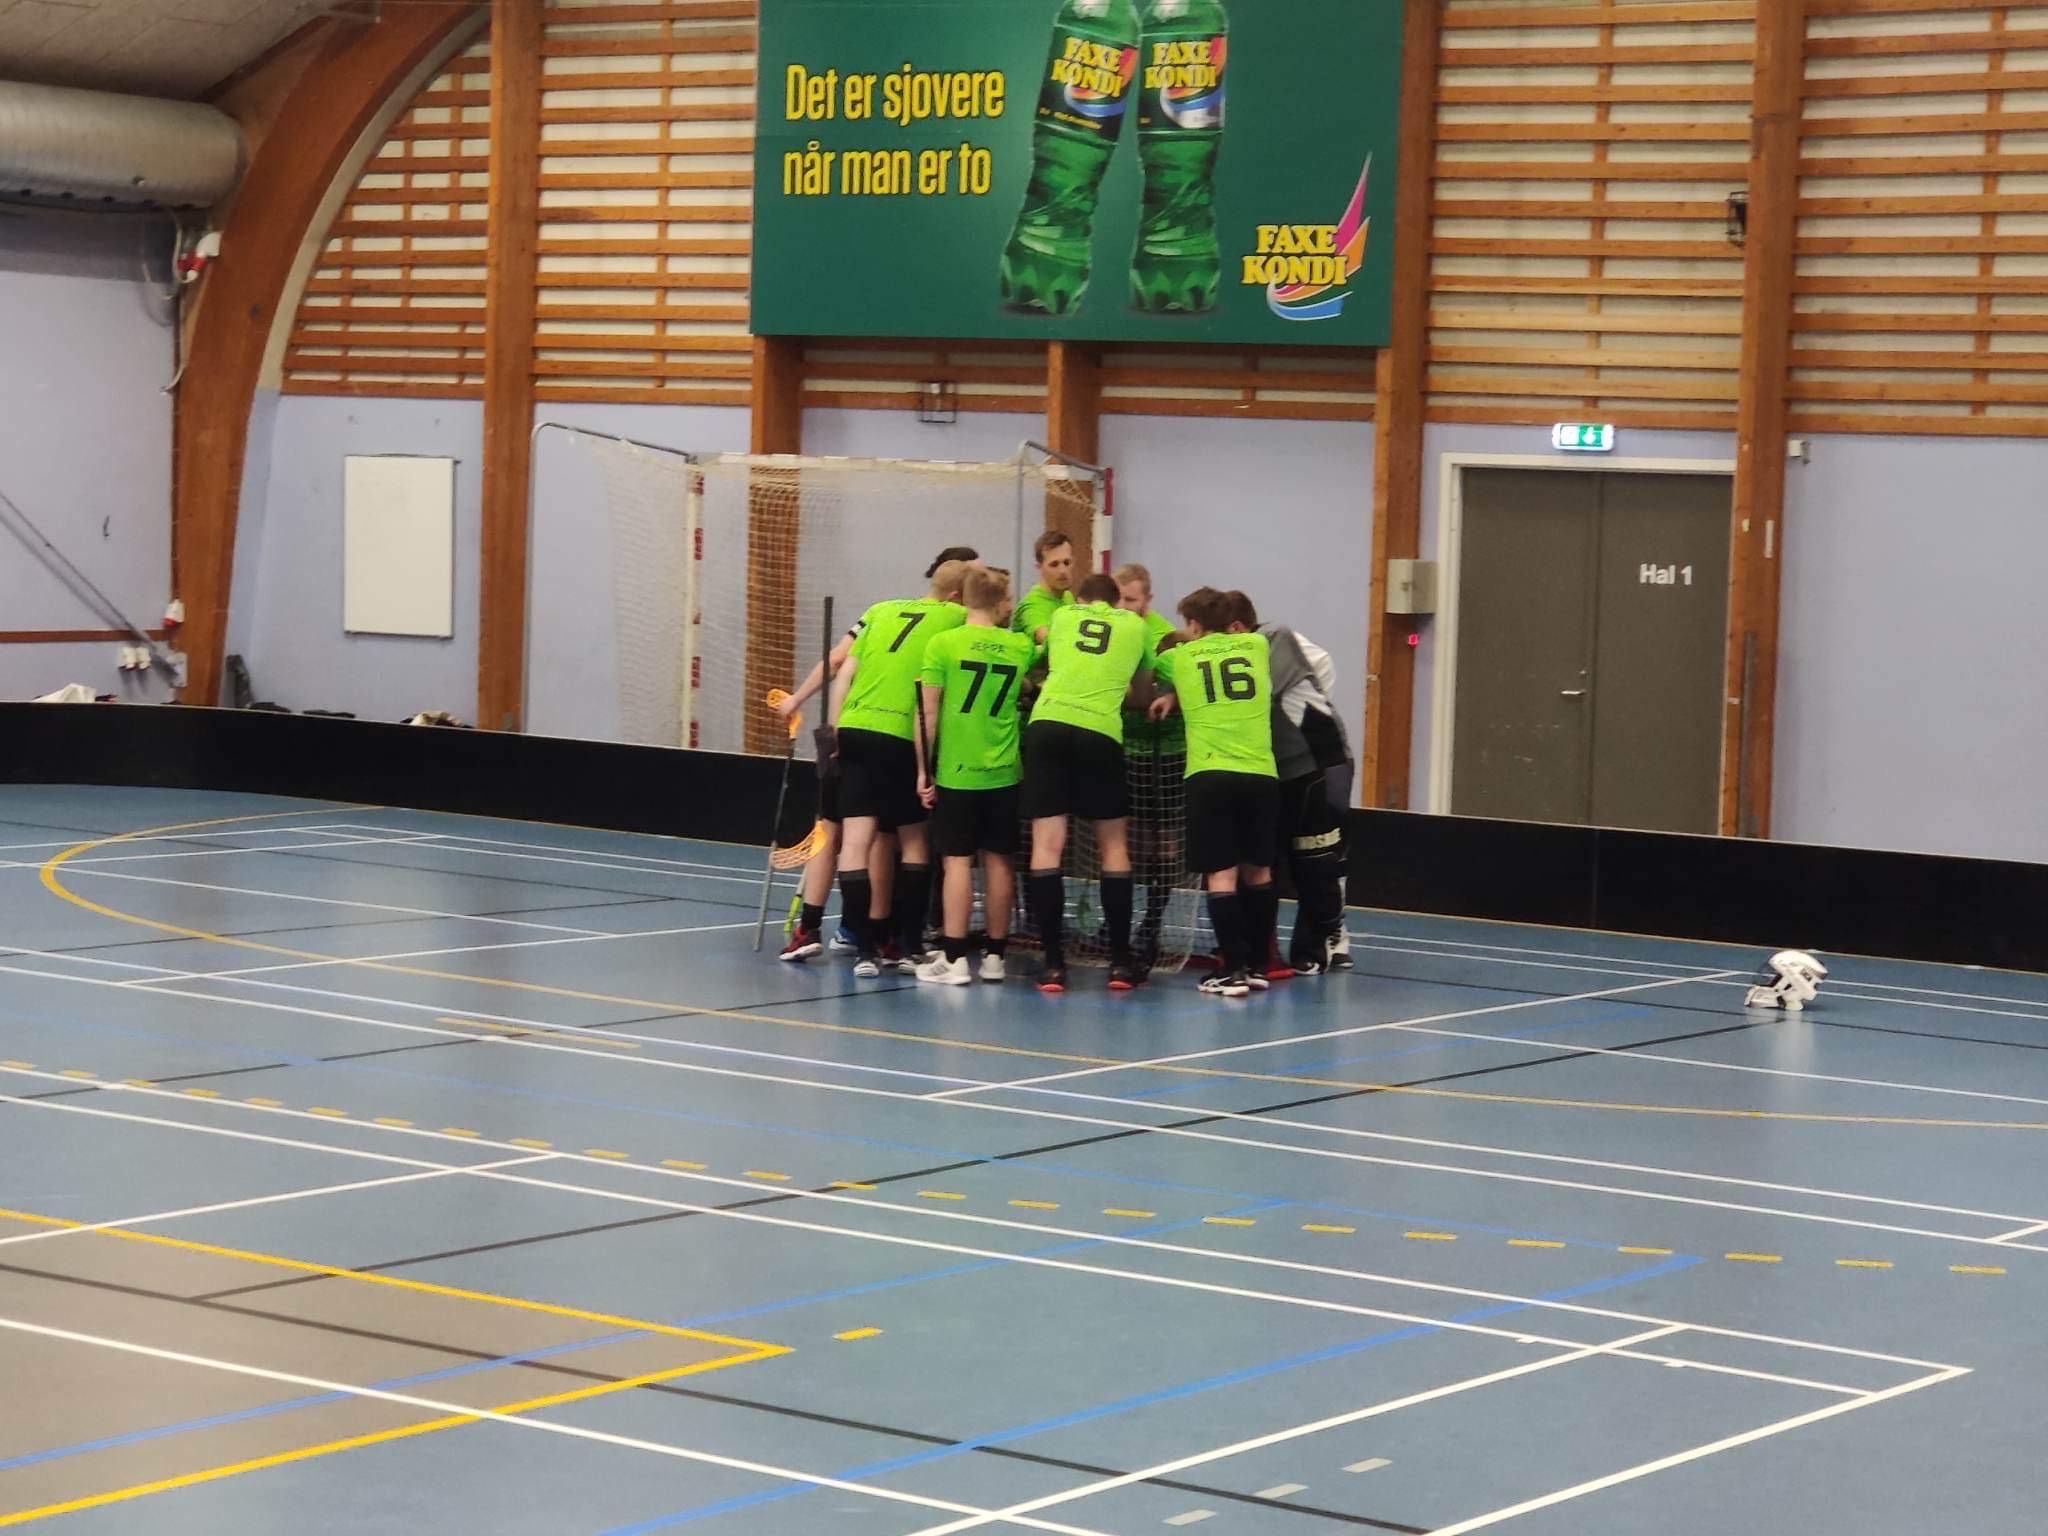 Randers Raptors – Odense Floorball Club